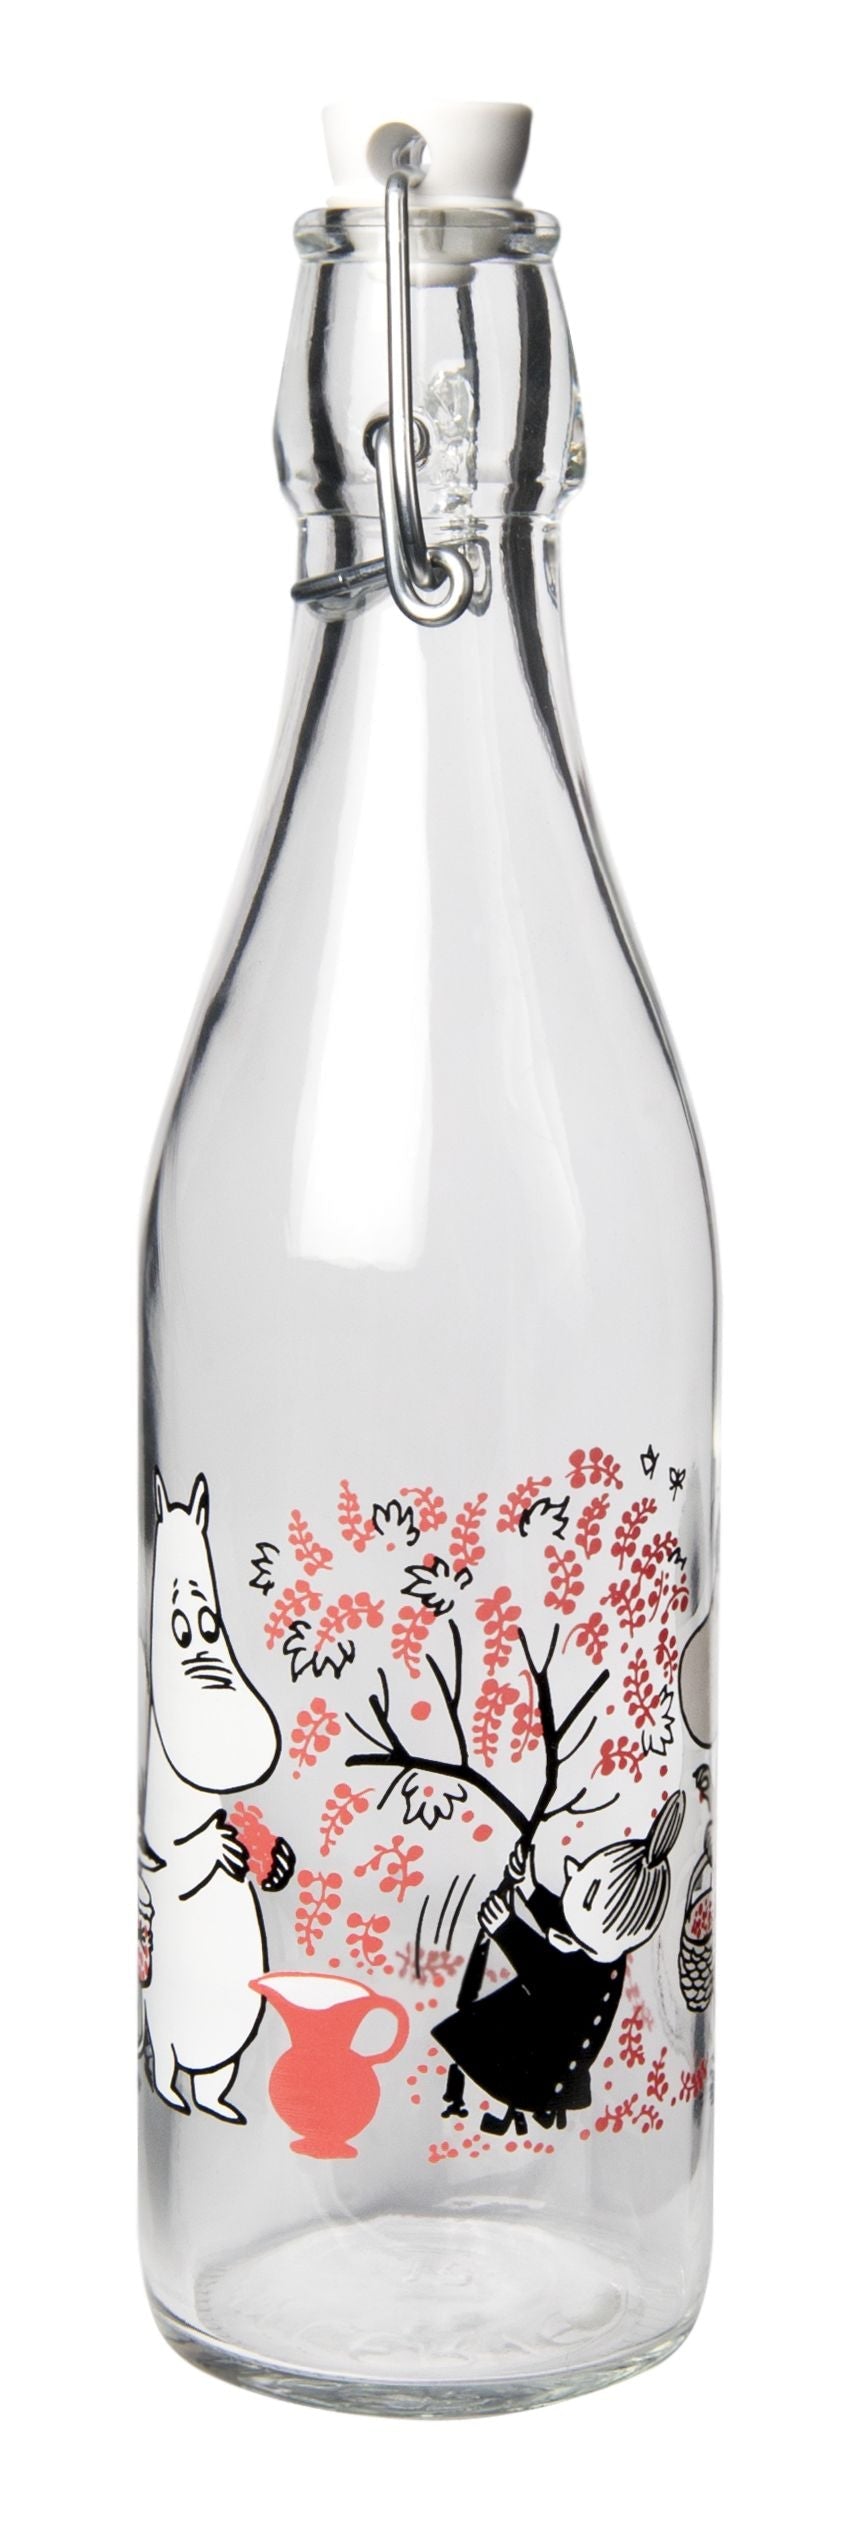 Muurla Moomin Glass Bottle, Berries